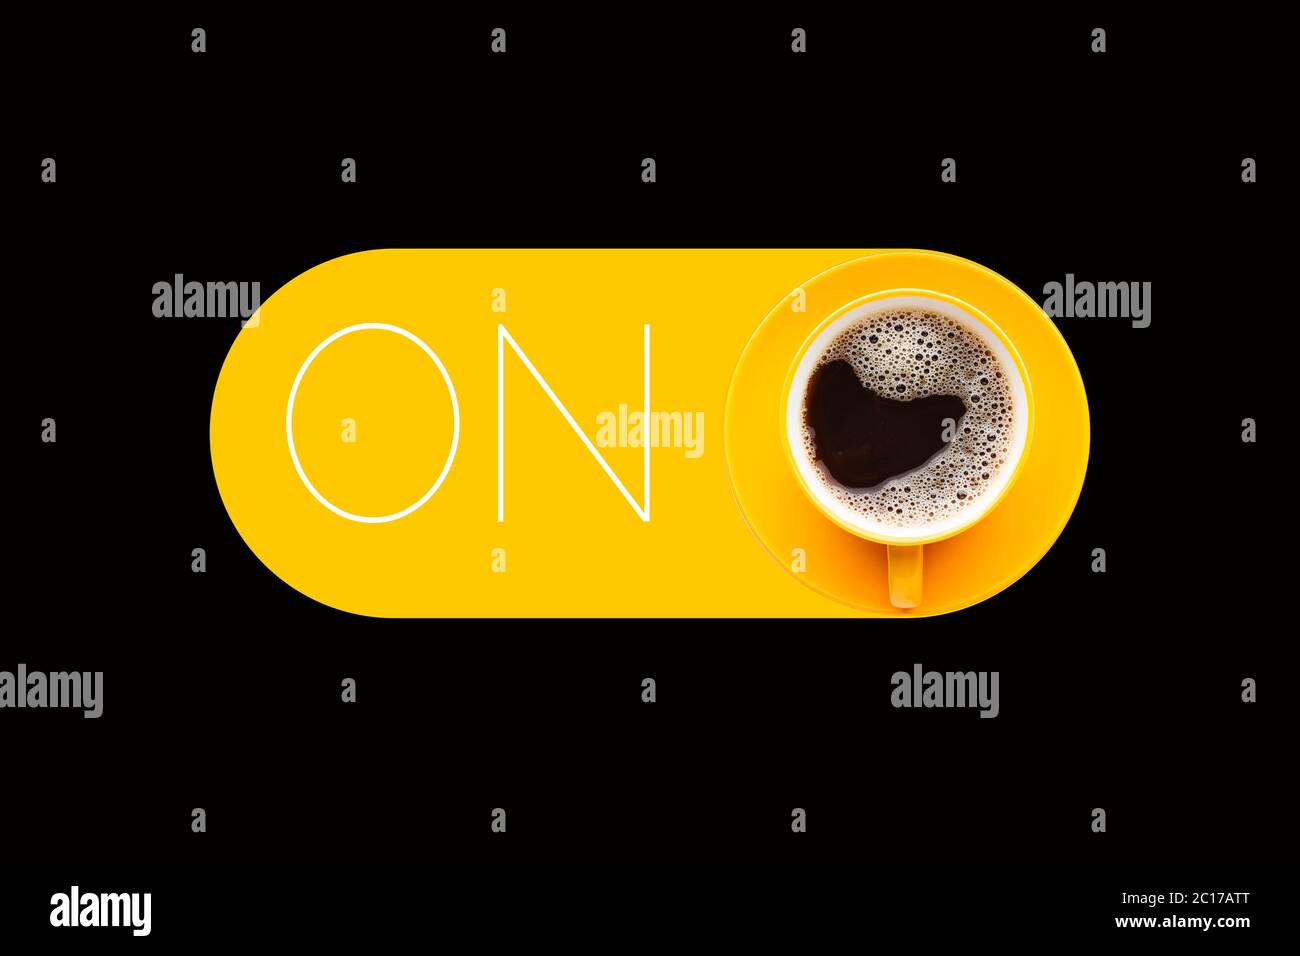 Café sur fond noir avec rectangle jaune arrondi Banque D'Images